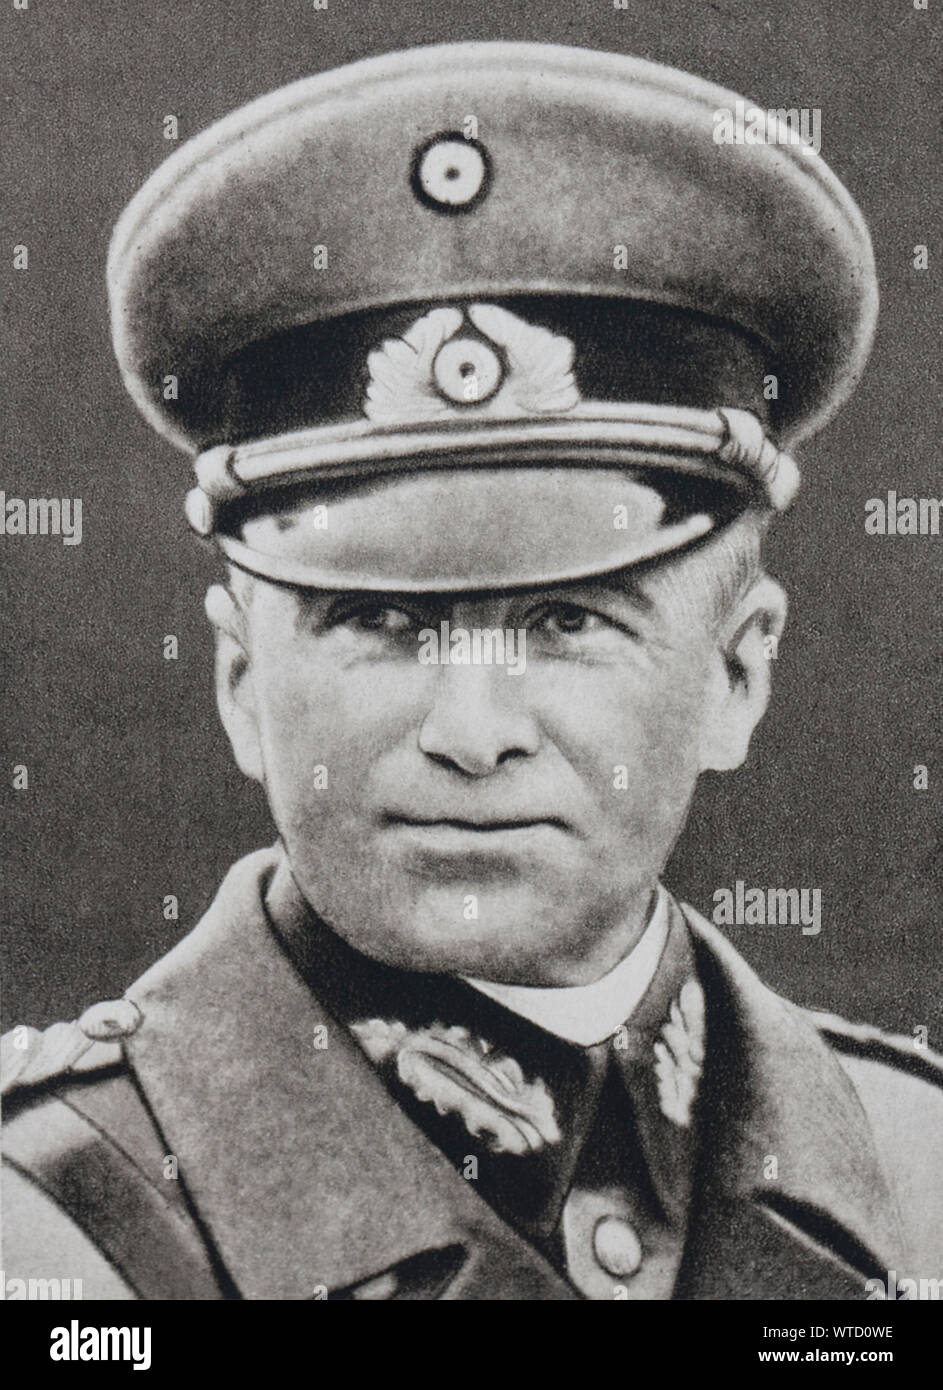 Generale Walther von Brauchitsch comandante in capo dell'esercito tedesco. Il periodo della seconda guerra mondiale Foto Stock